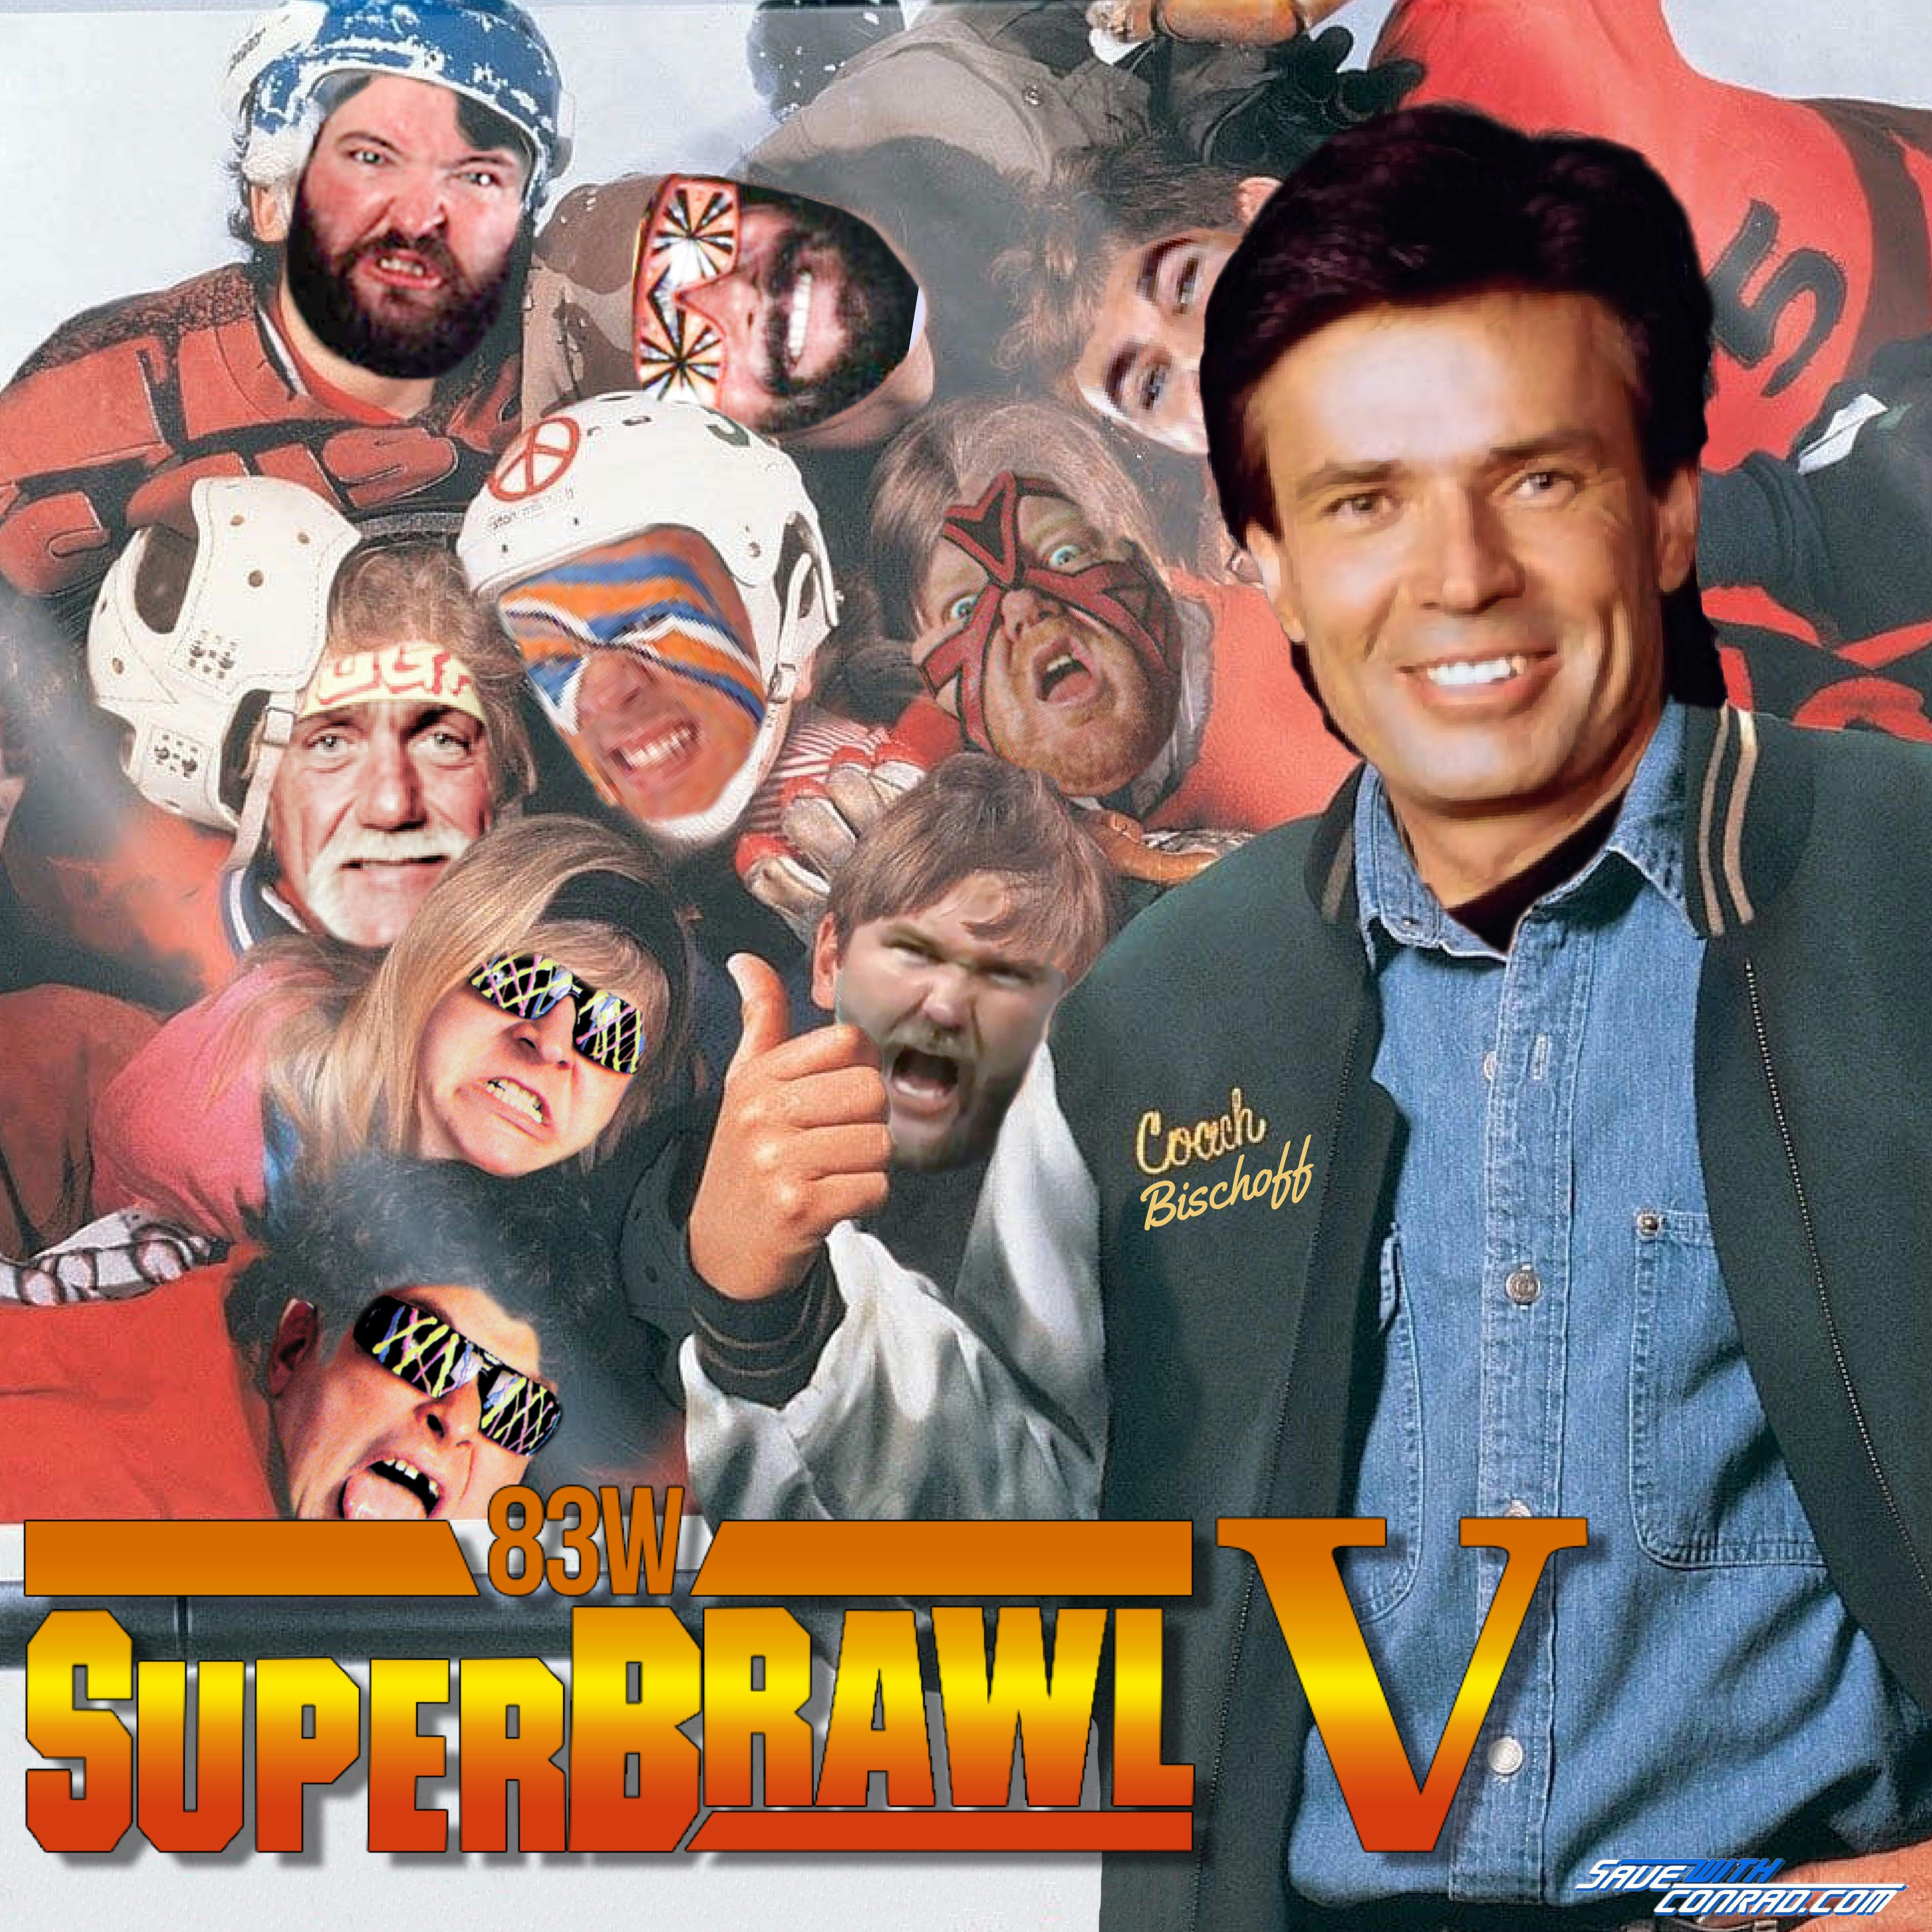 Episode 97: SuperBrawl V